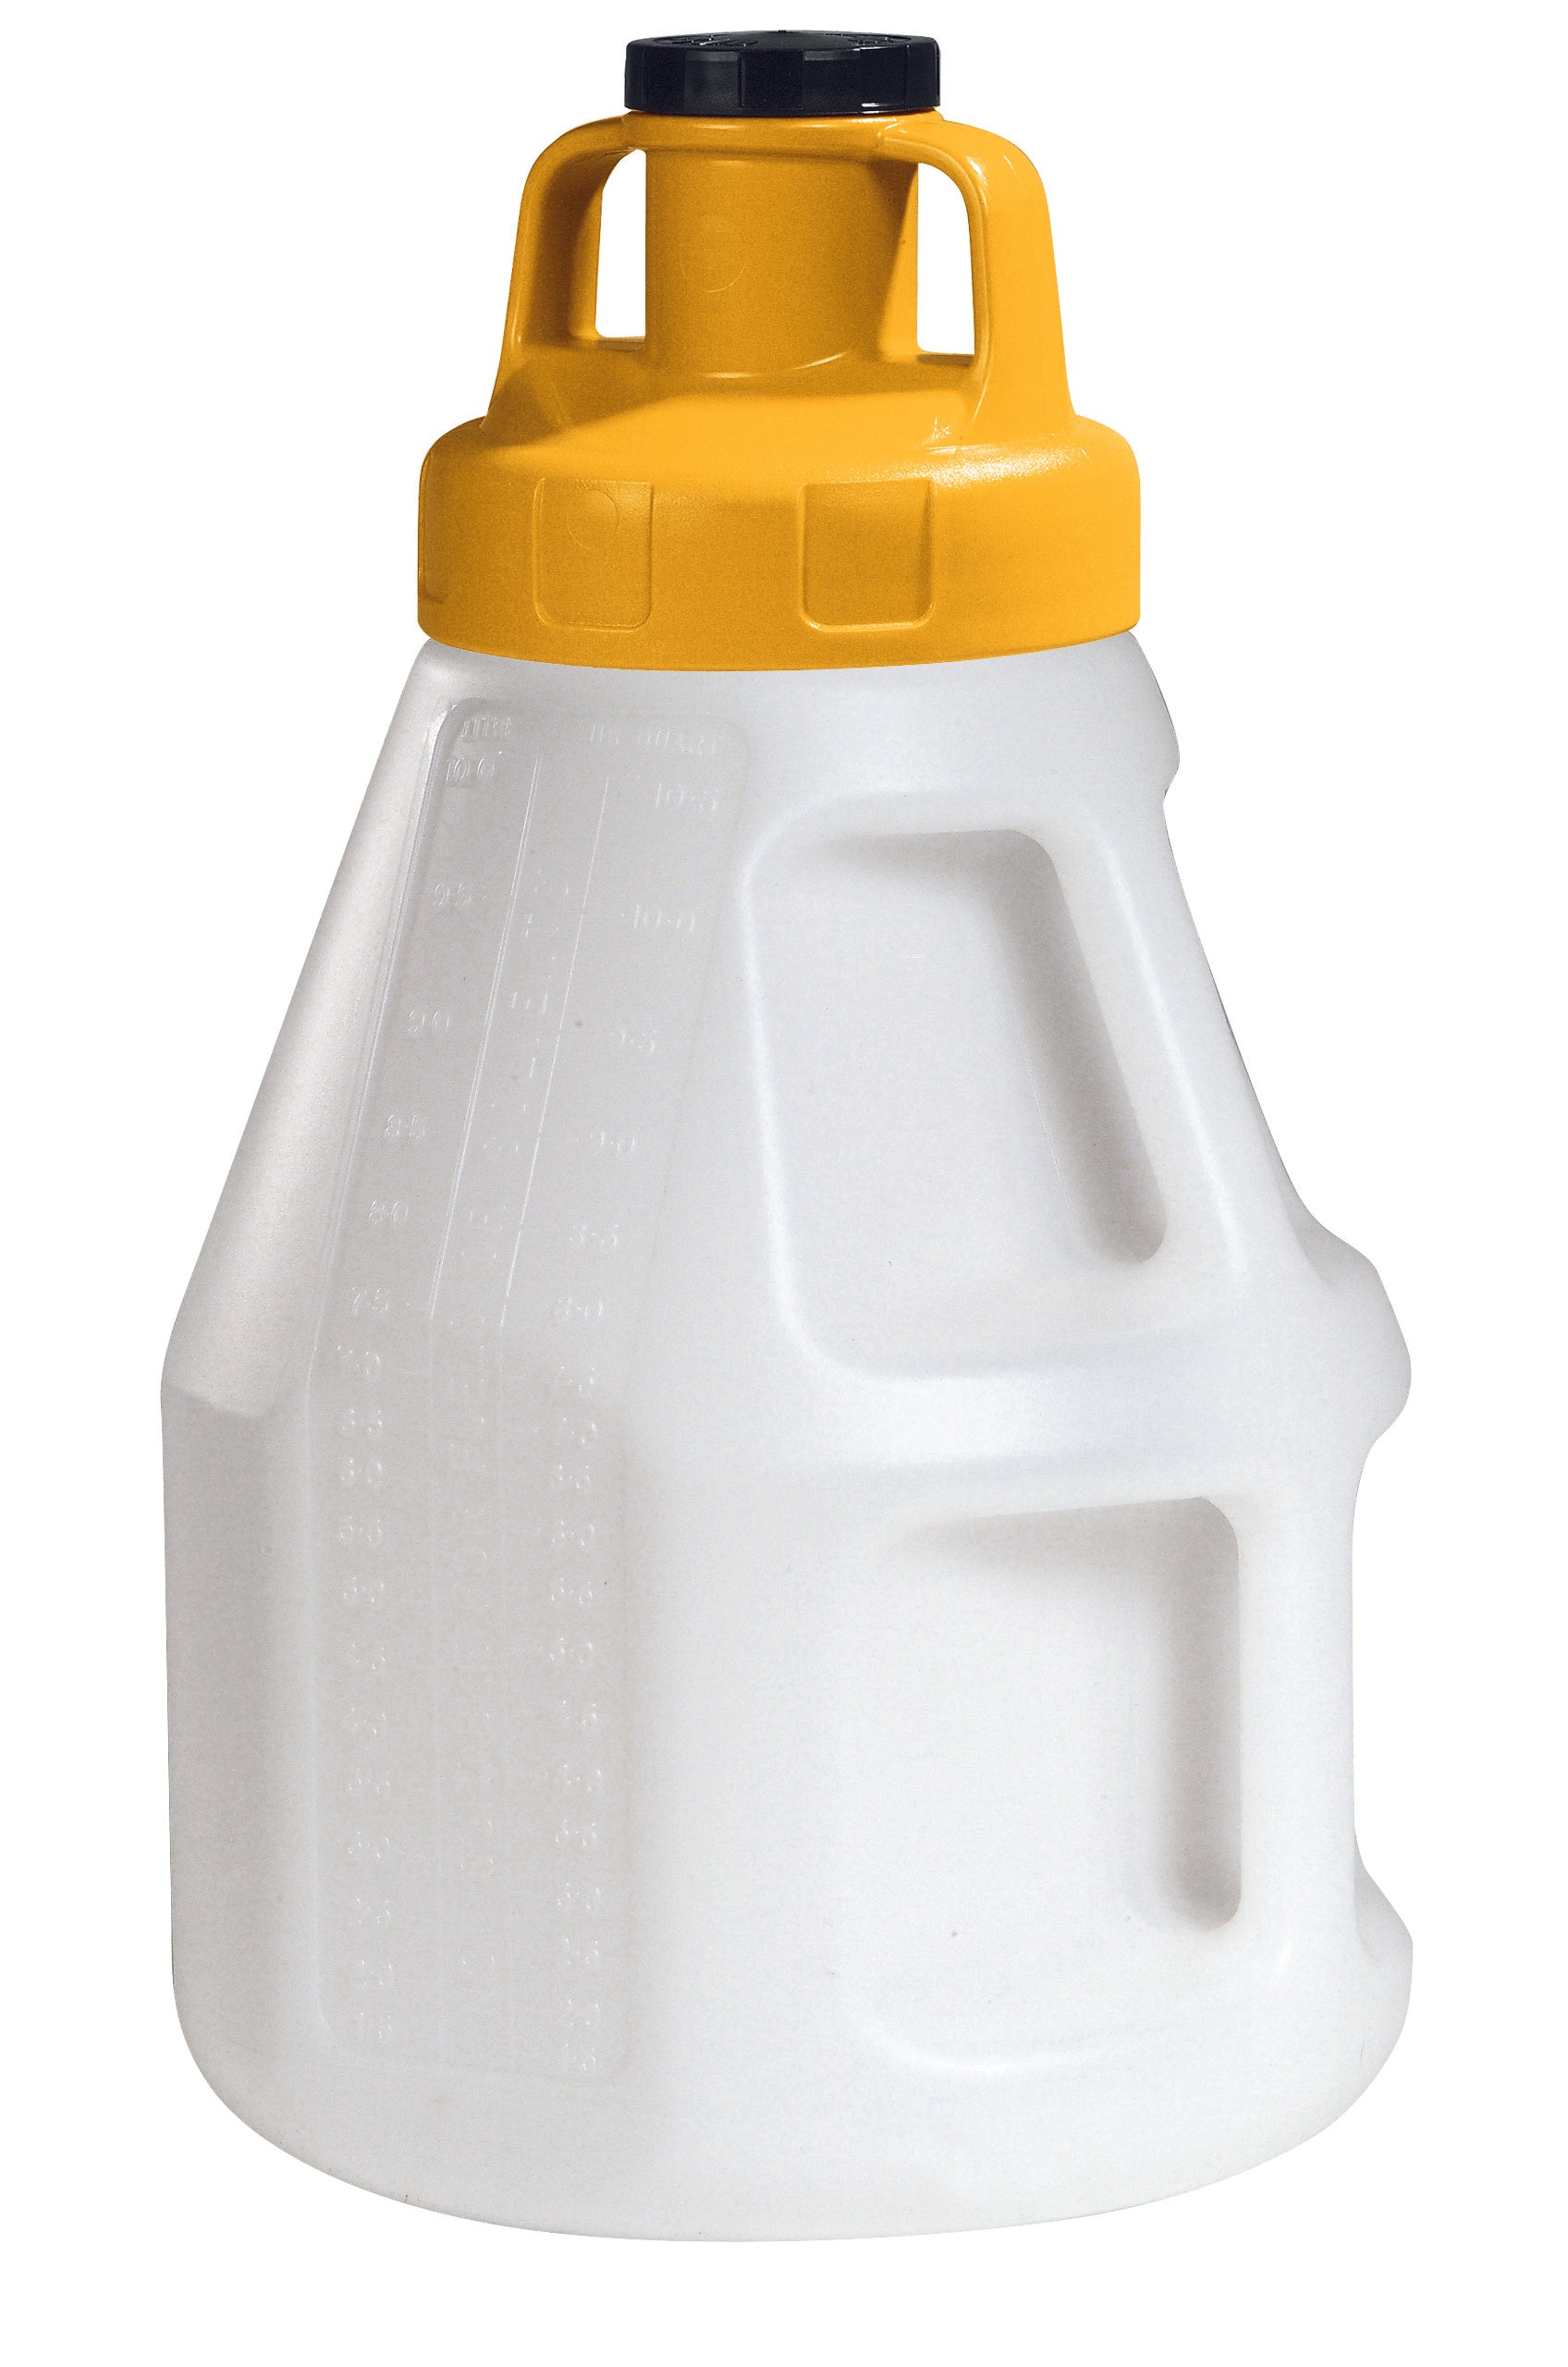 Öl-Kanne aus HDPE 10 Liter mit gelbem Allzweckdeckel, Polyethylen (high density)